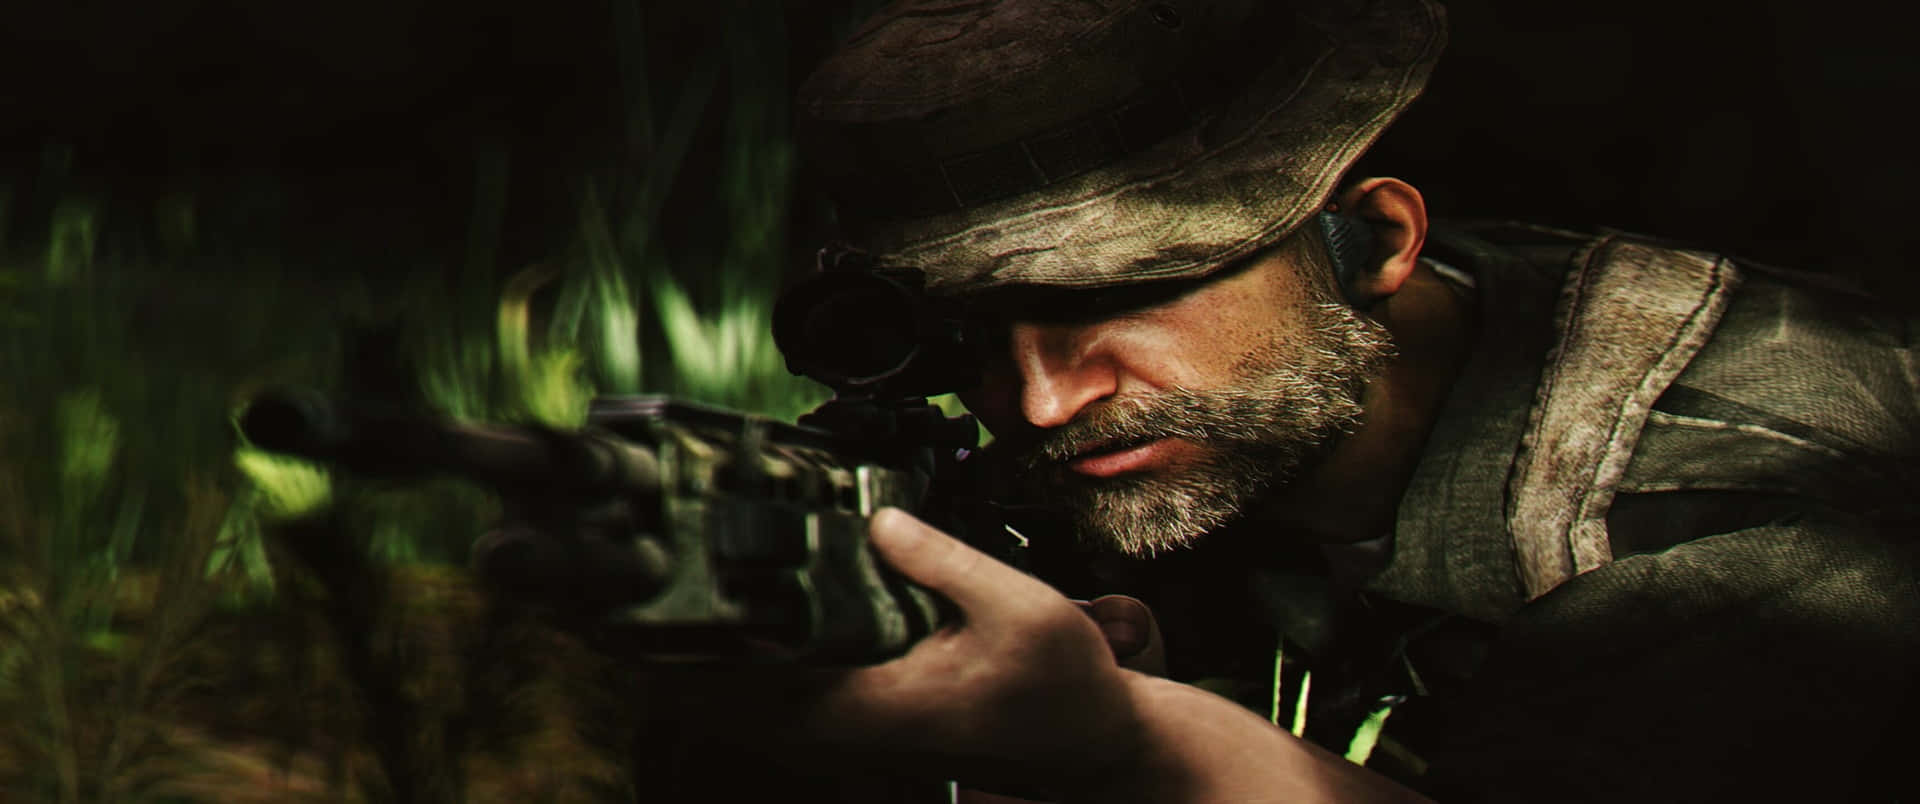 Dettaglioda Cecchino 3440x1440p Sfondo Call Of Duty Modern Warfare